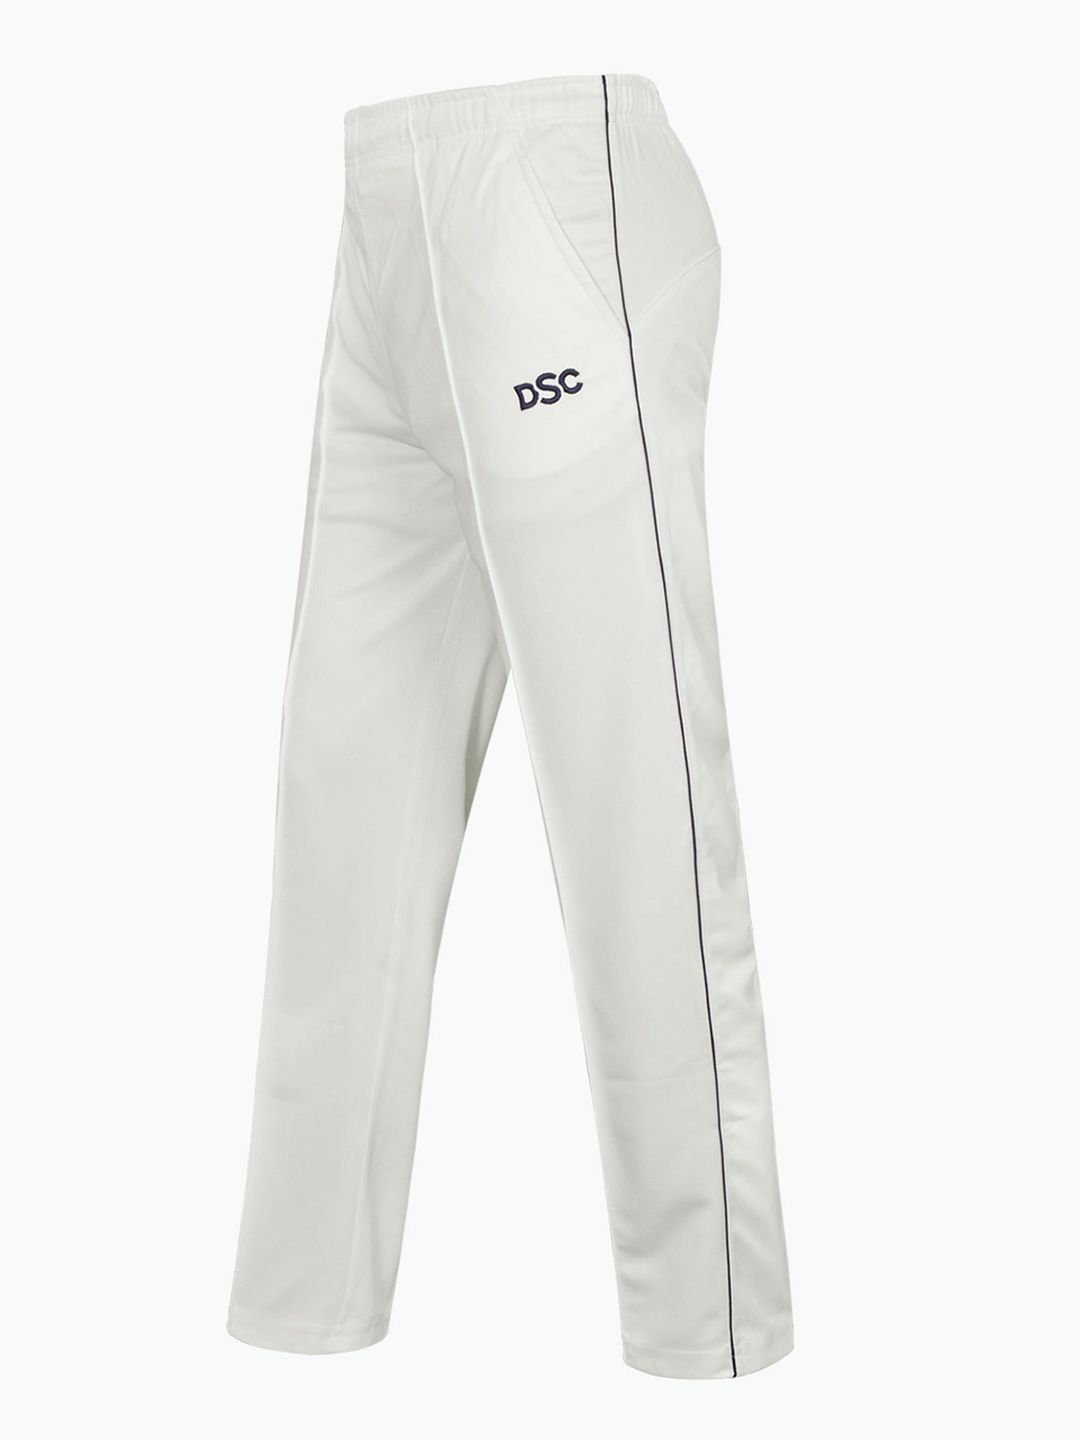 Nike Men's Dri-FIT ADV AeroSwift Men's Racing Pants | Dick's Sporting Goods